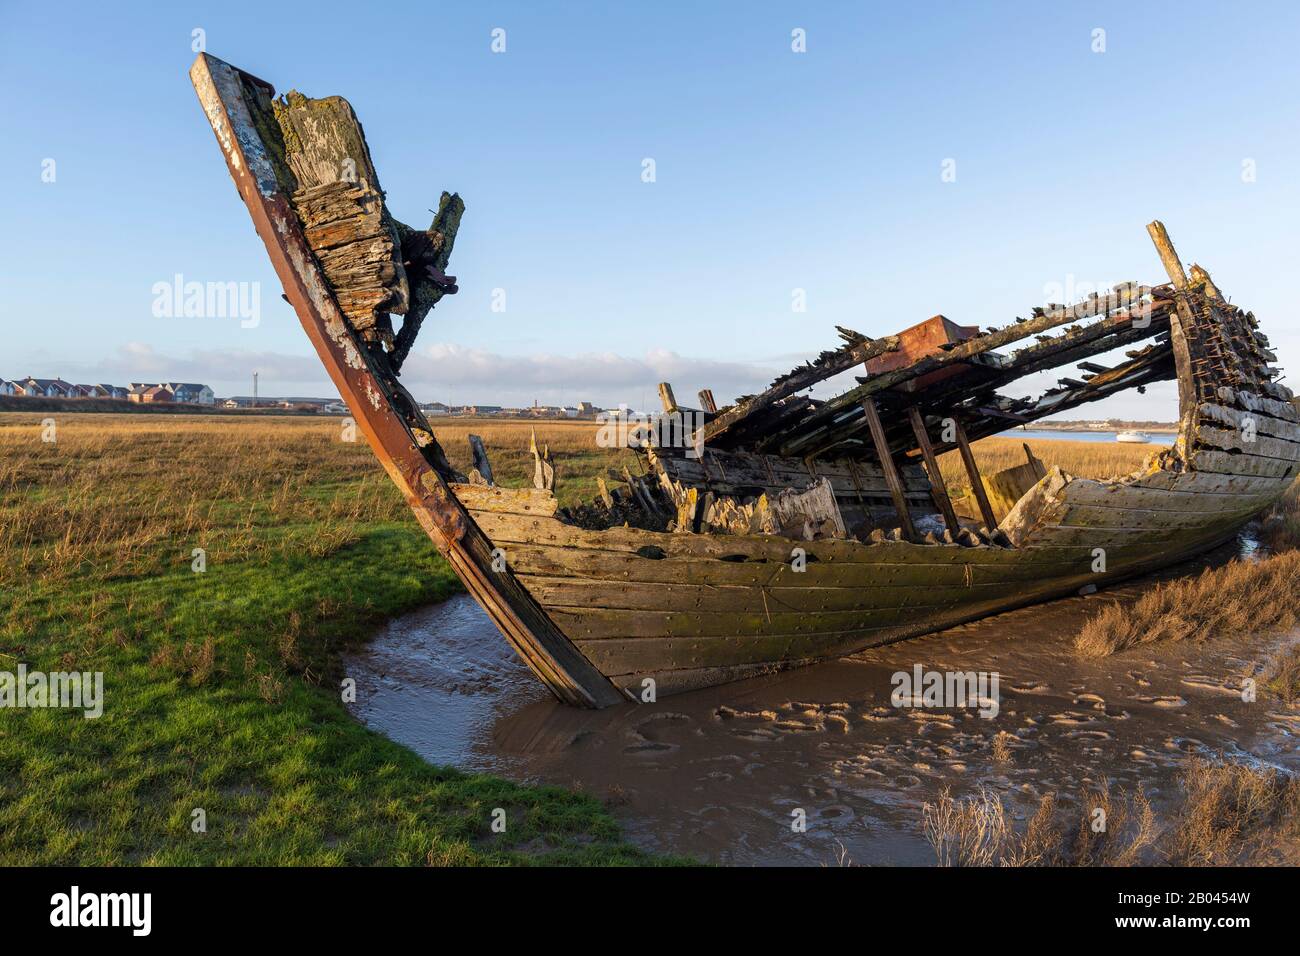 Fleetwood, Lancs - Rückgang Der Fischindustrie - Die verrottendem Hucken alter Boote zerfallen in den Sanden von Fleetwood Marshes neben dem Fluss Wyre Stockfoto